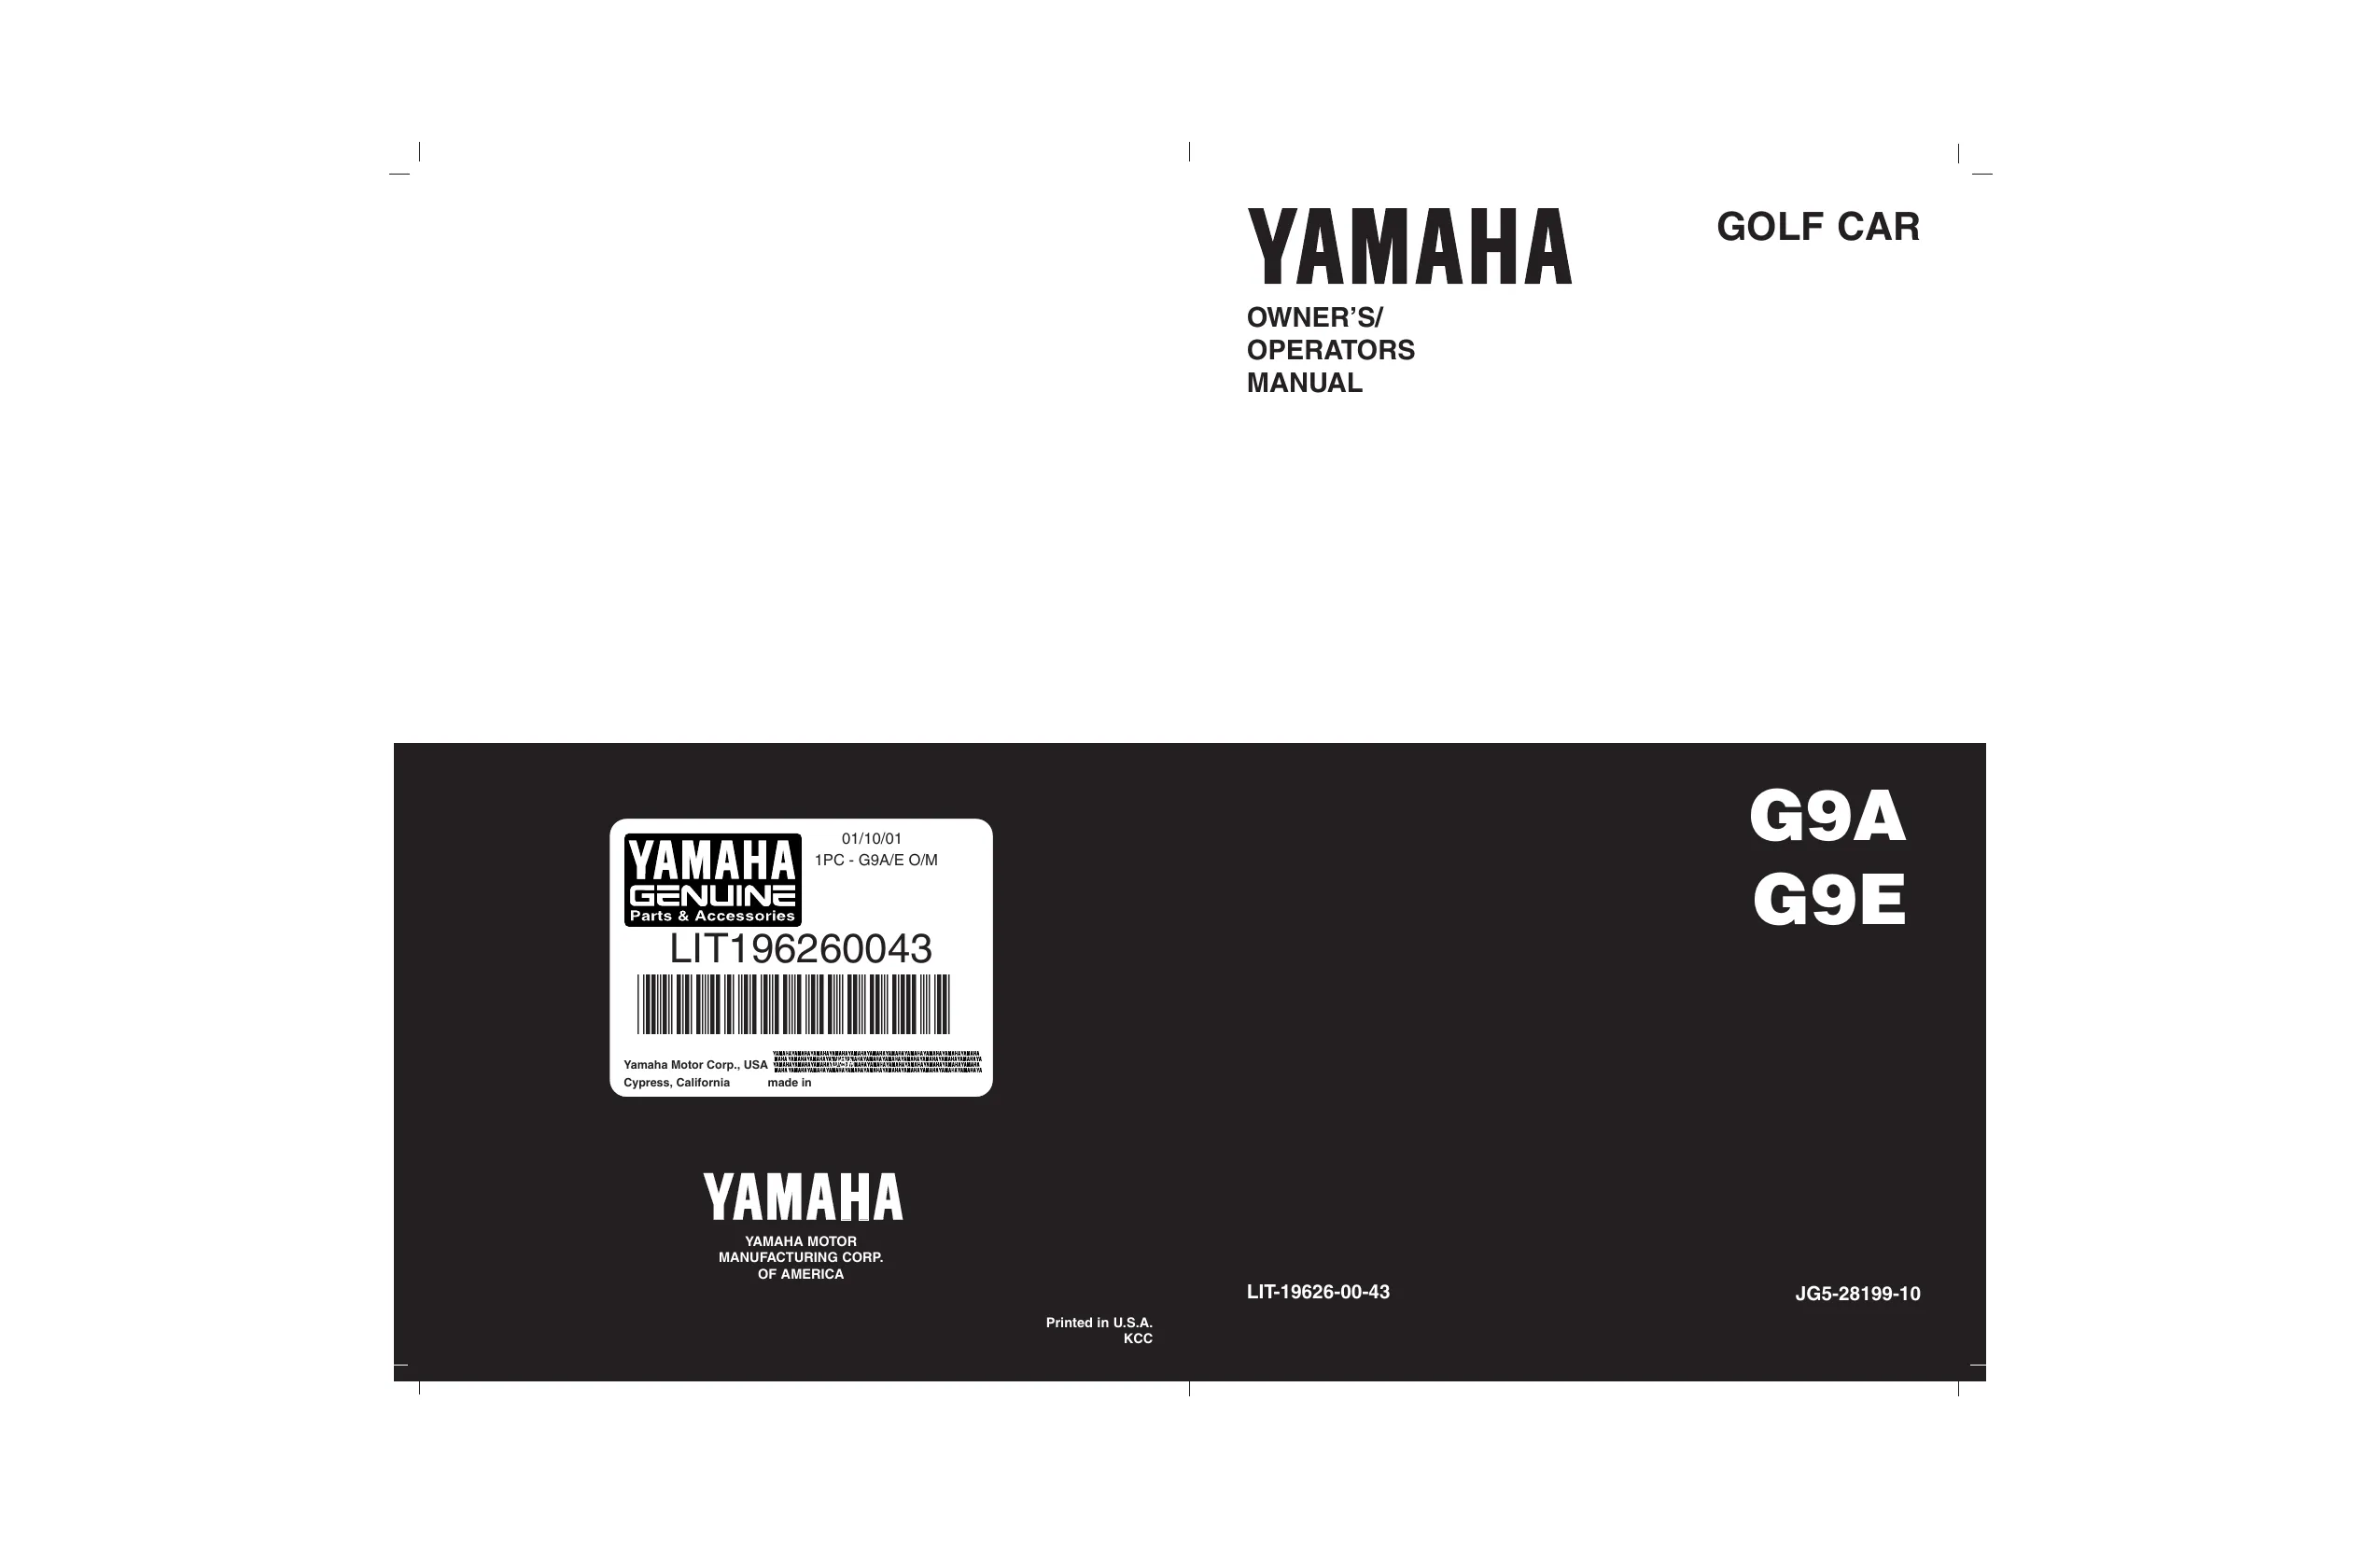 Yamaha Golf Cart G2-G9, G2-A/E. G9-AJ/EJ, G9-AG/AH, G9-EG/EH1, G9-EH2 repair manual image